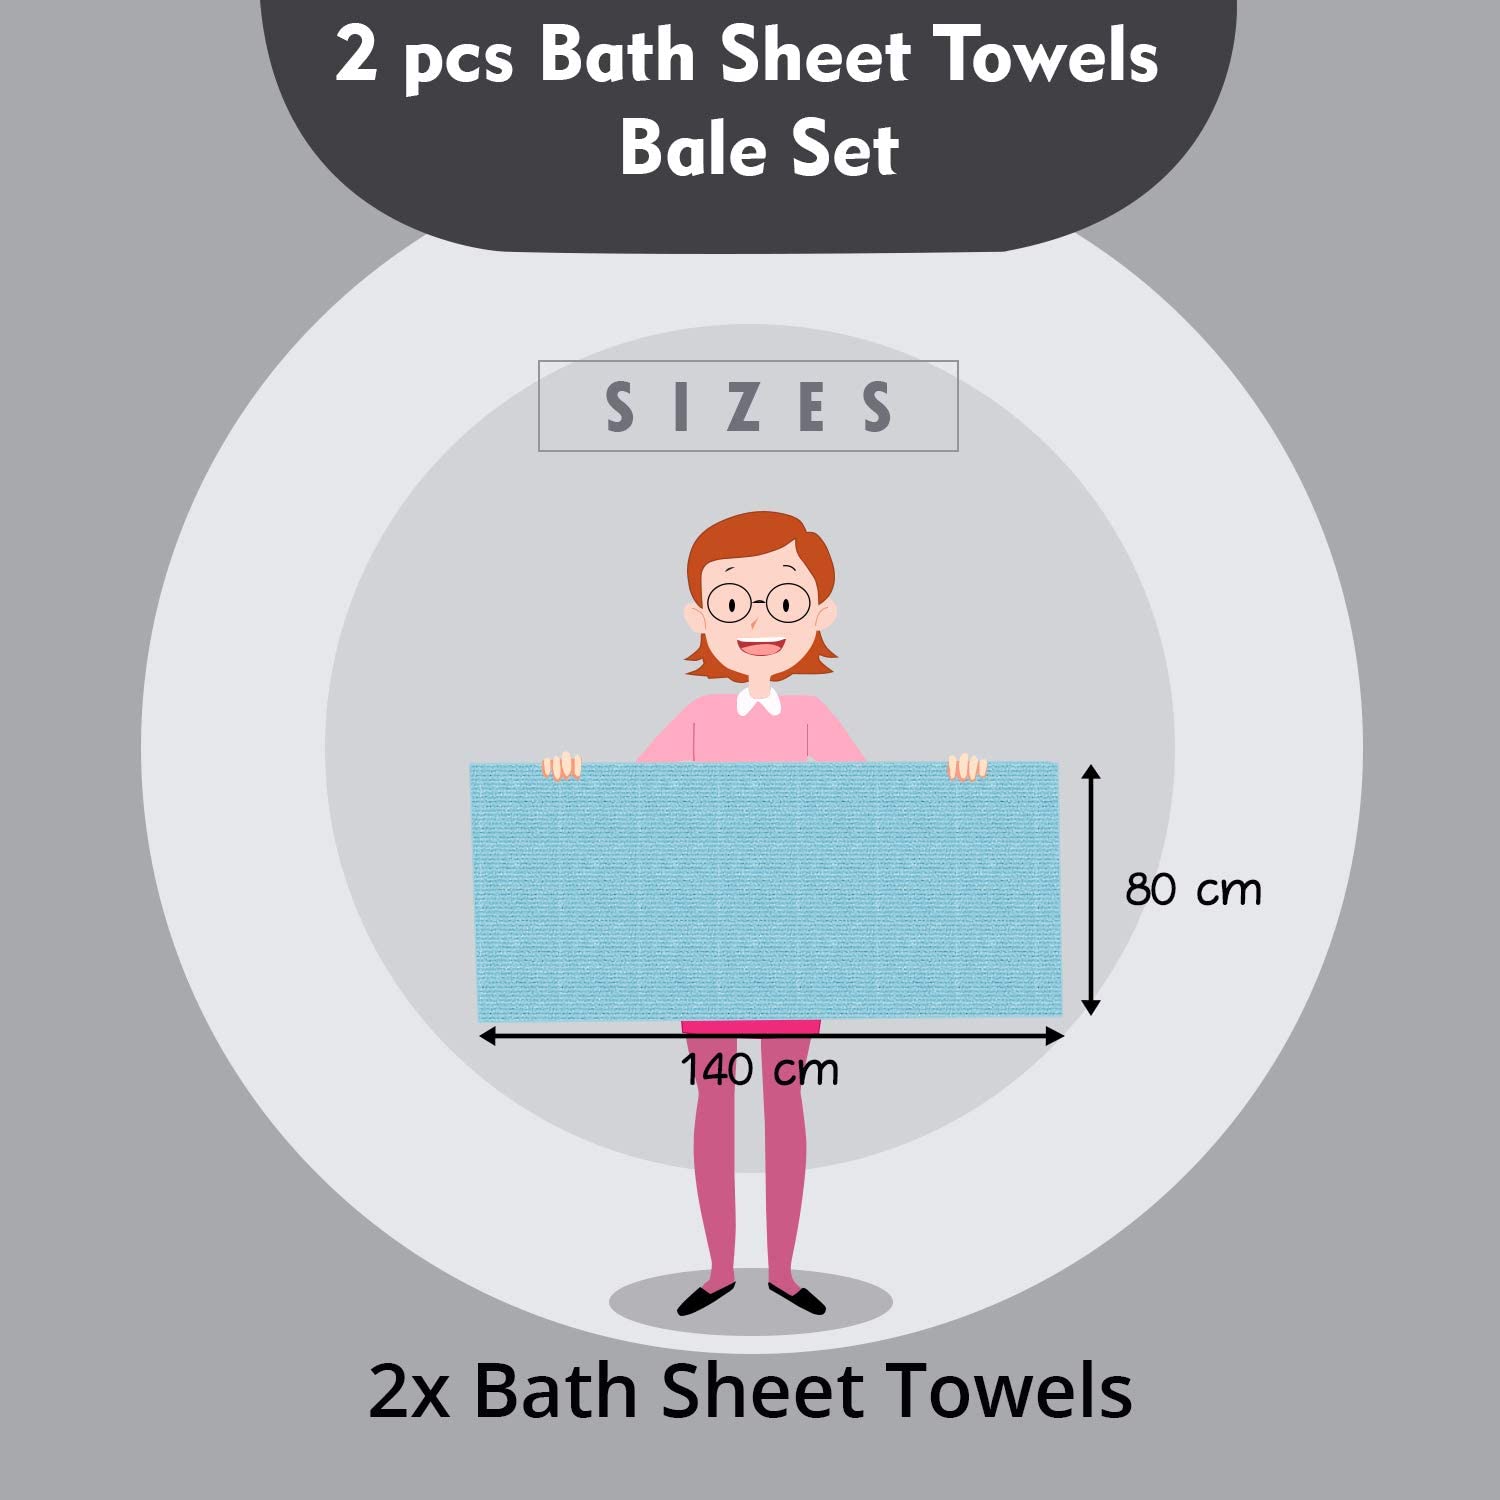 2 Pcs 100 % Cotton Premium Bath Sheet Towel Bale Set Olive Plain